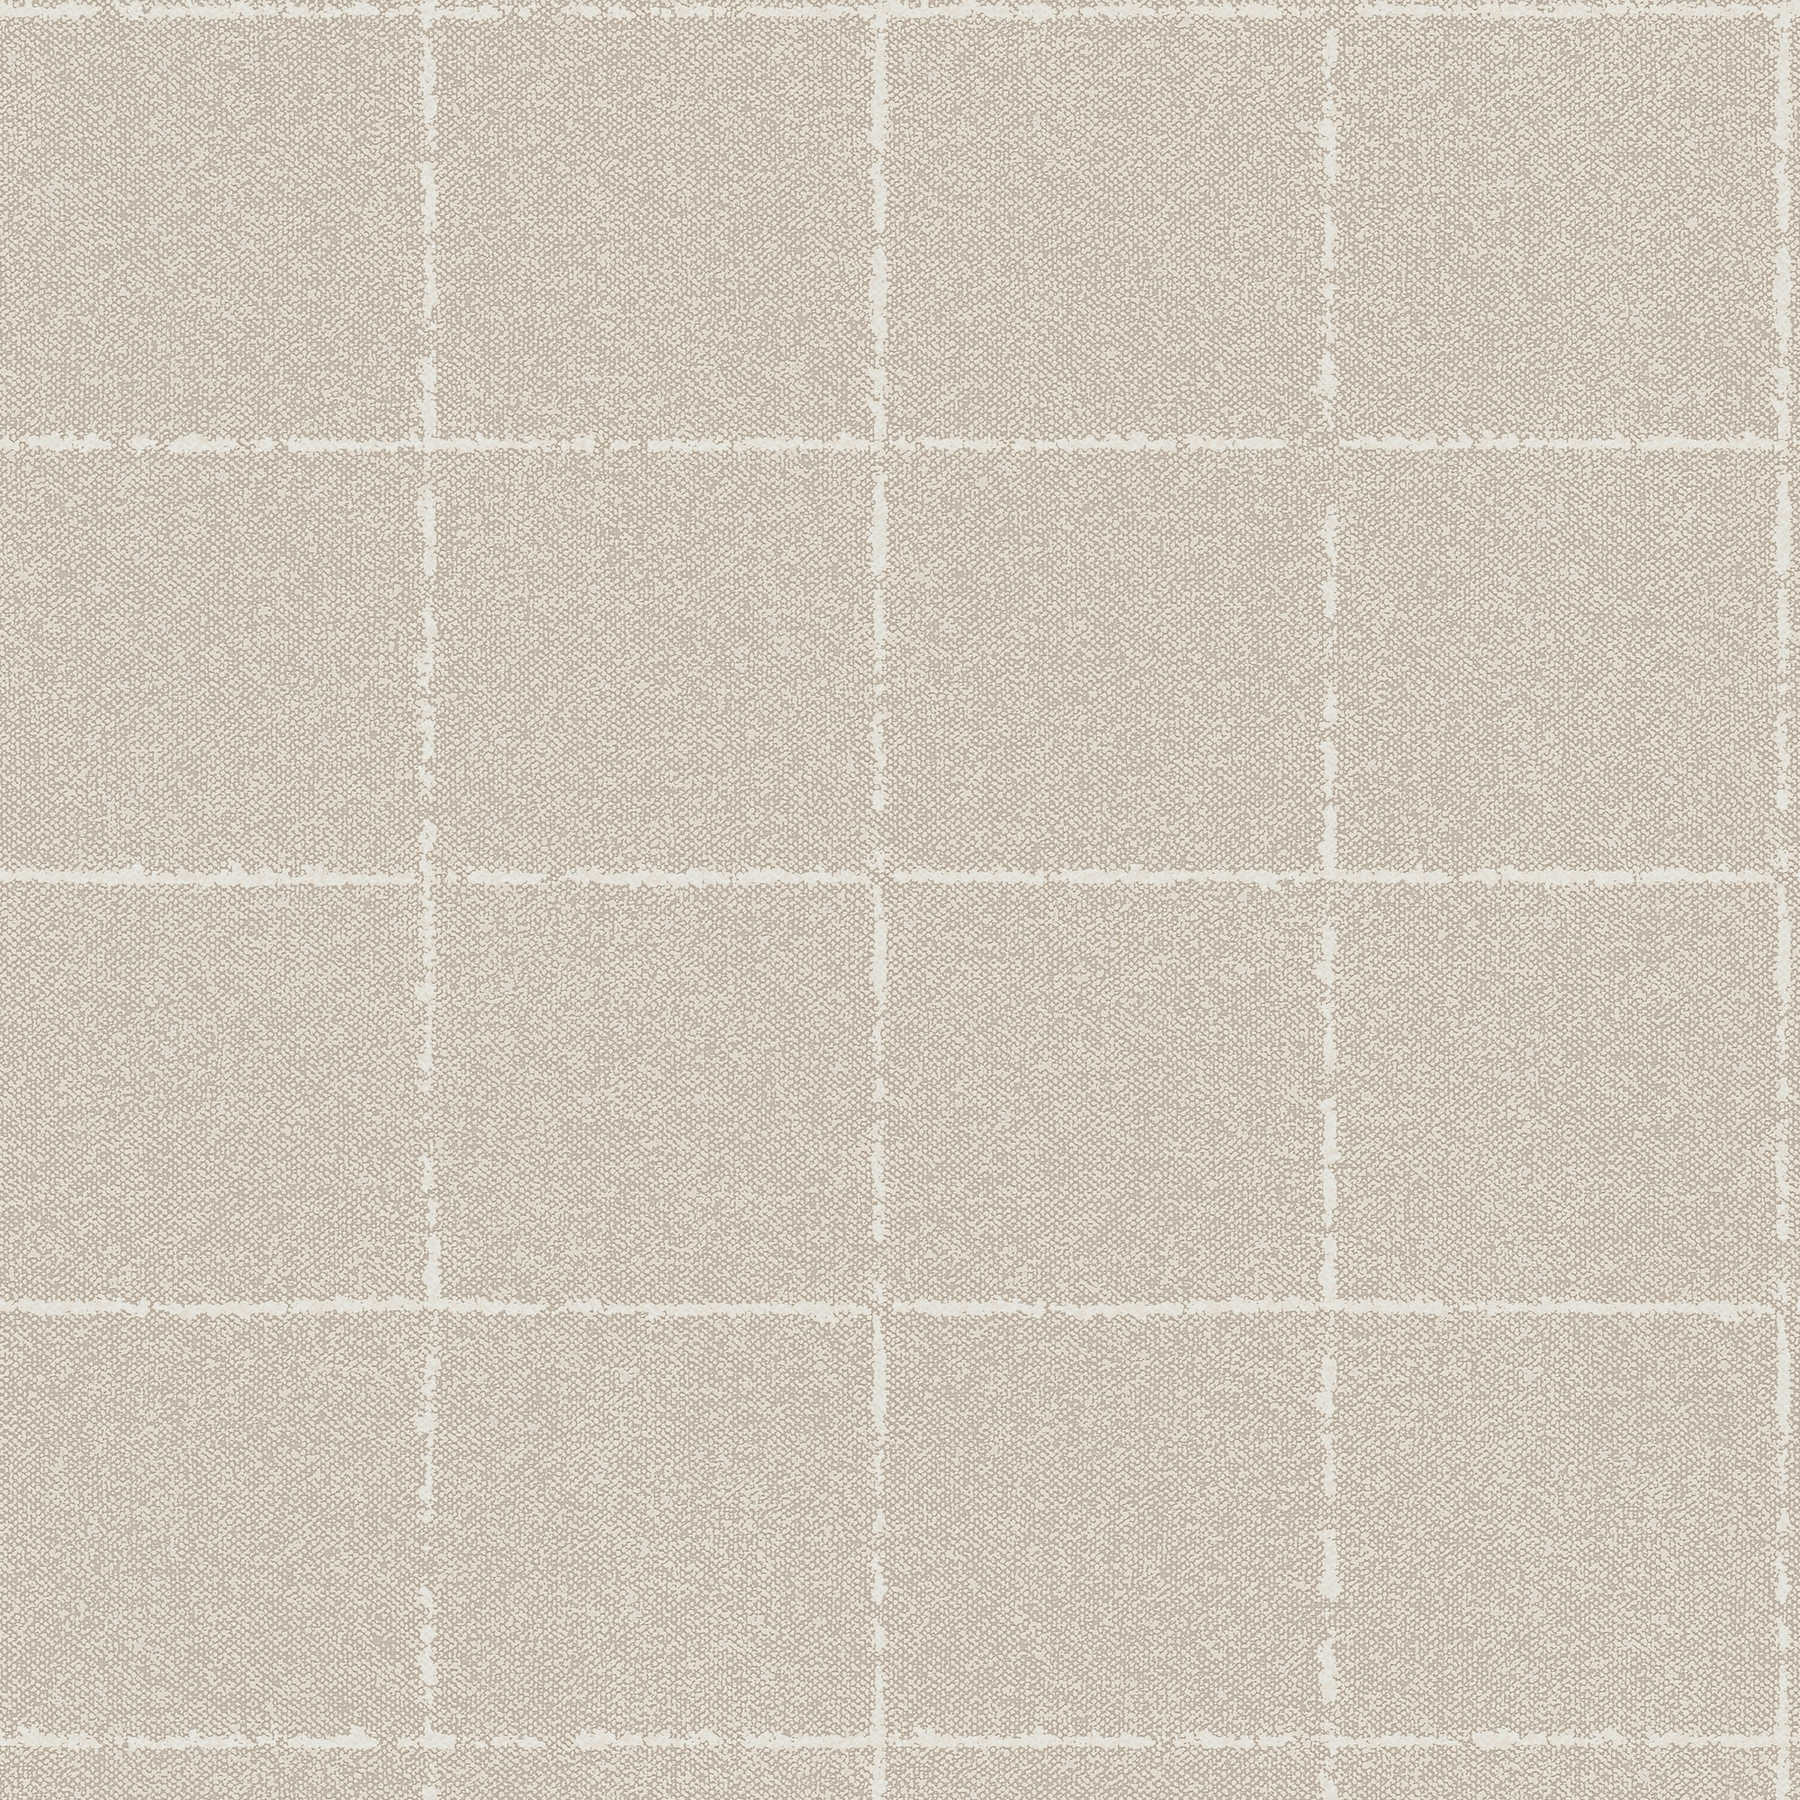         Checkered wallpaper in textile optics, textured - beige, cream, brown
    